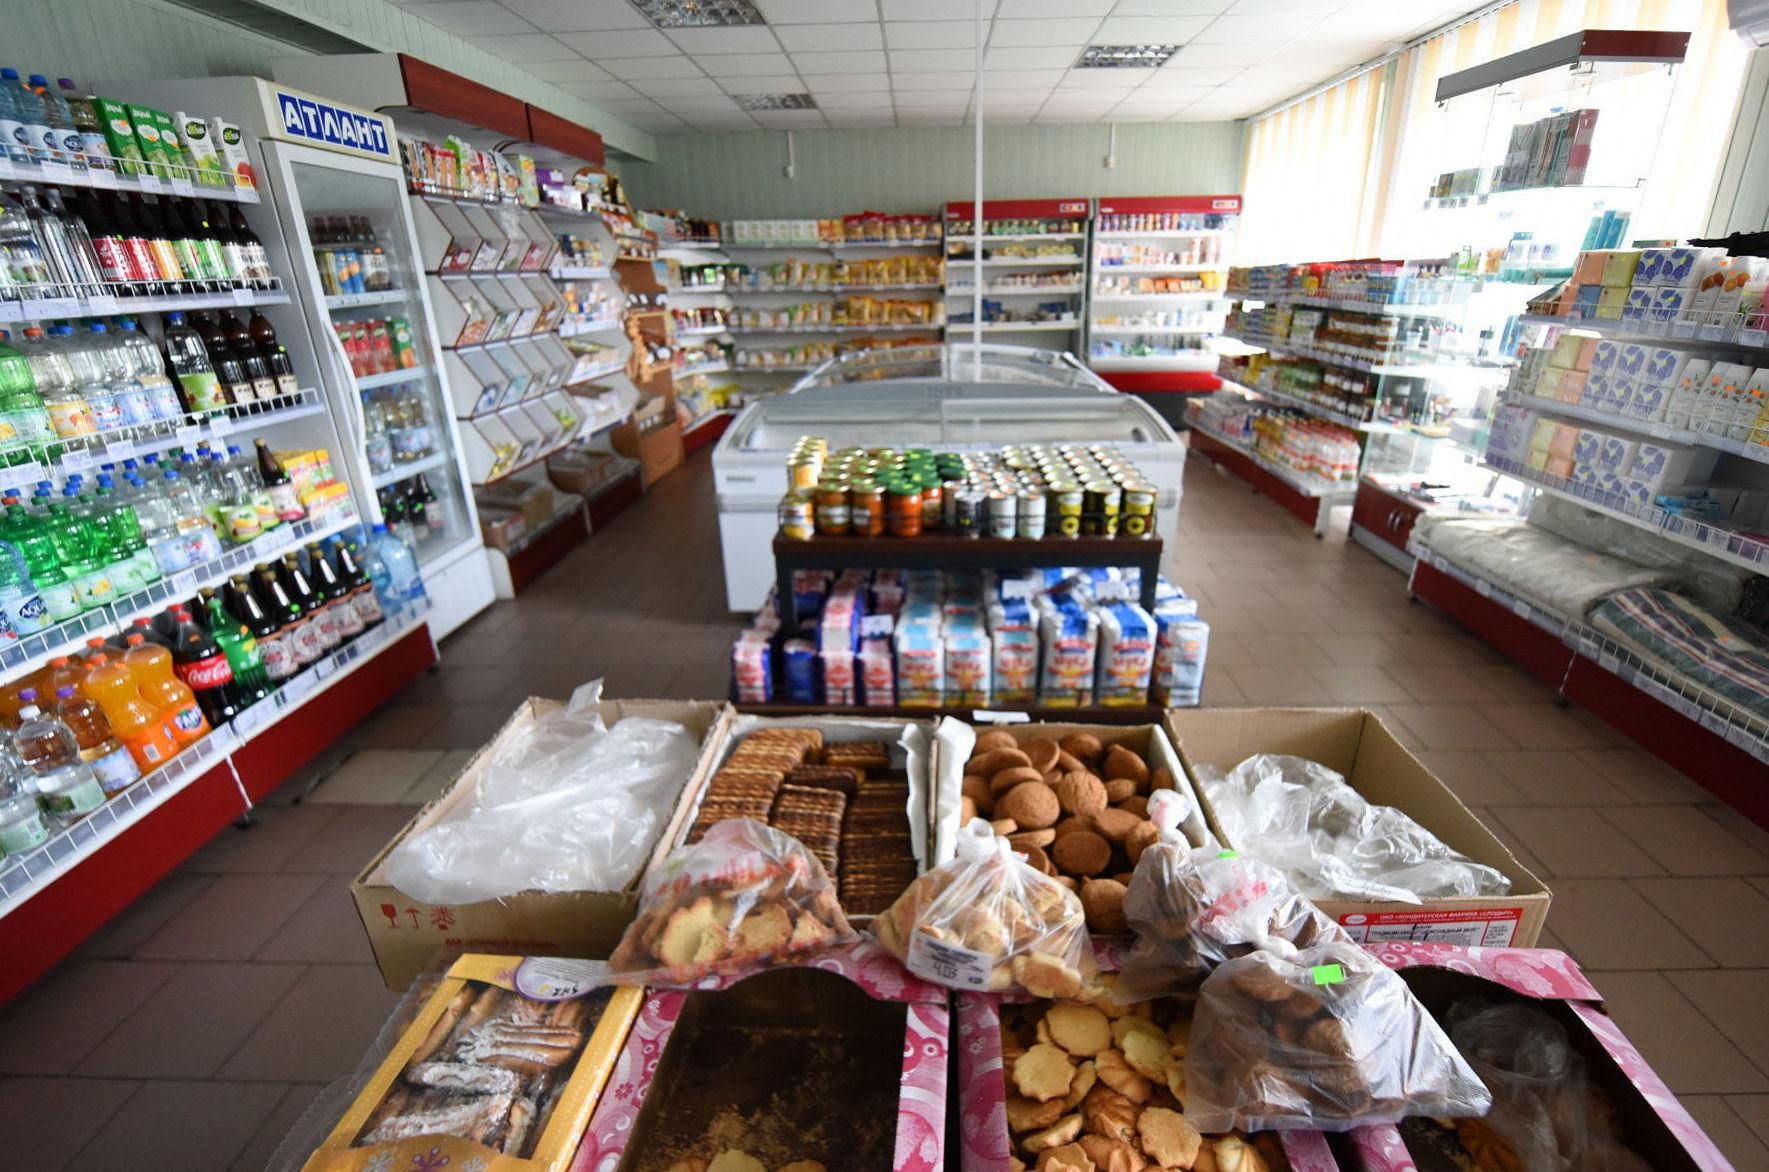 © SPUTNIK / ПАВЕЛ ВУР Жители литовского приграничья ходят в магазины райПО с калькуляторами - все, что дешевле, чем в Литве, пользуется спросом